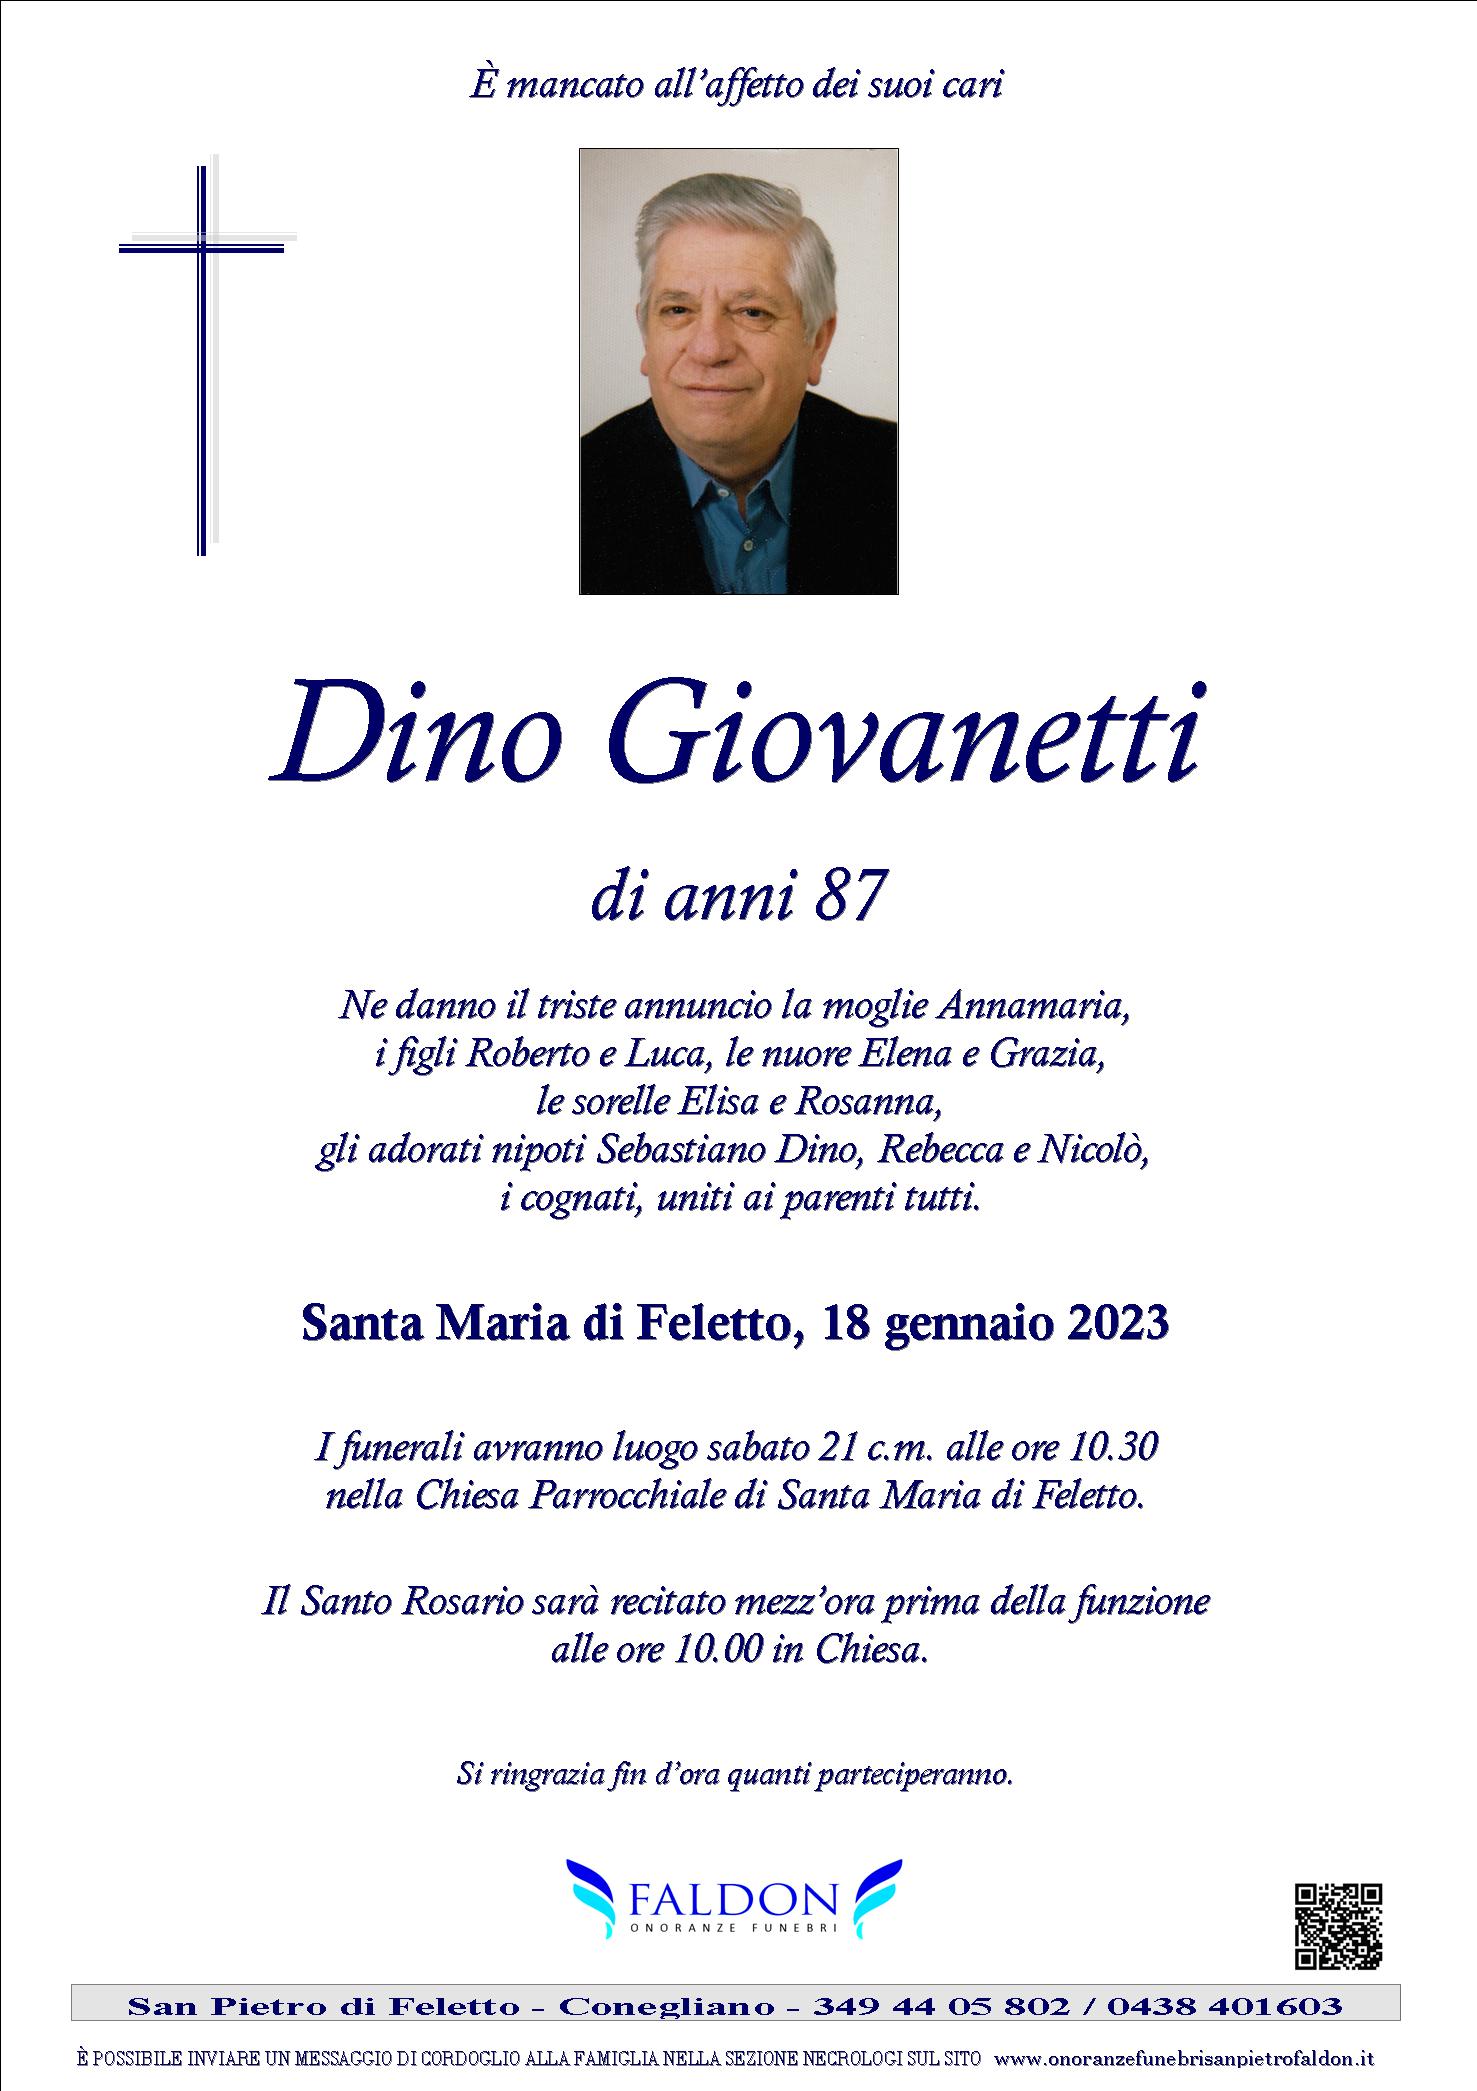 Dino Giovanetti